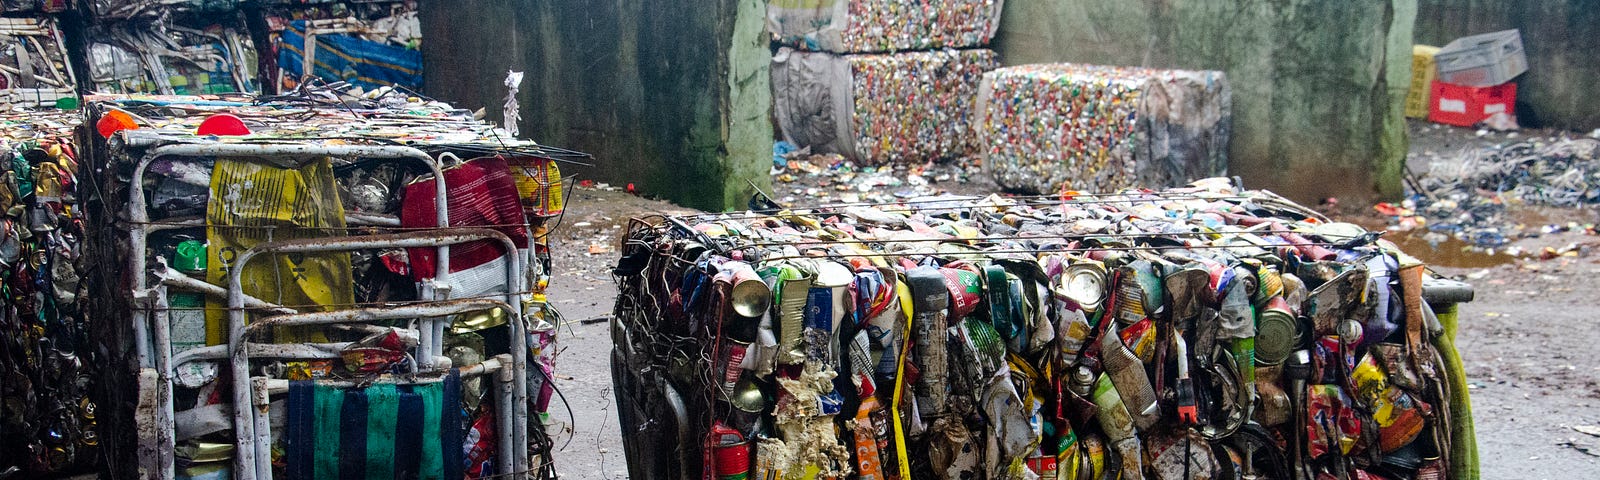 Blocos de lixo reciclável composto por cadeiras, garrafas e outros resíduos.